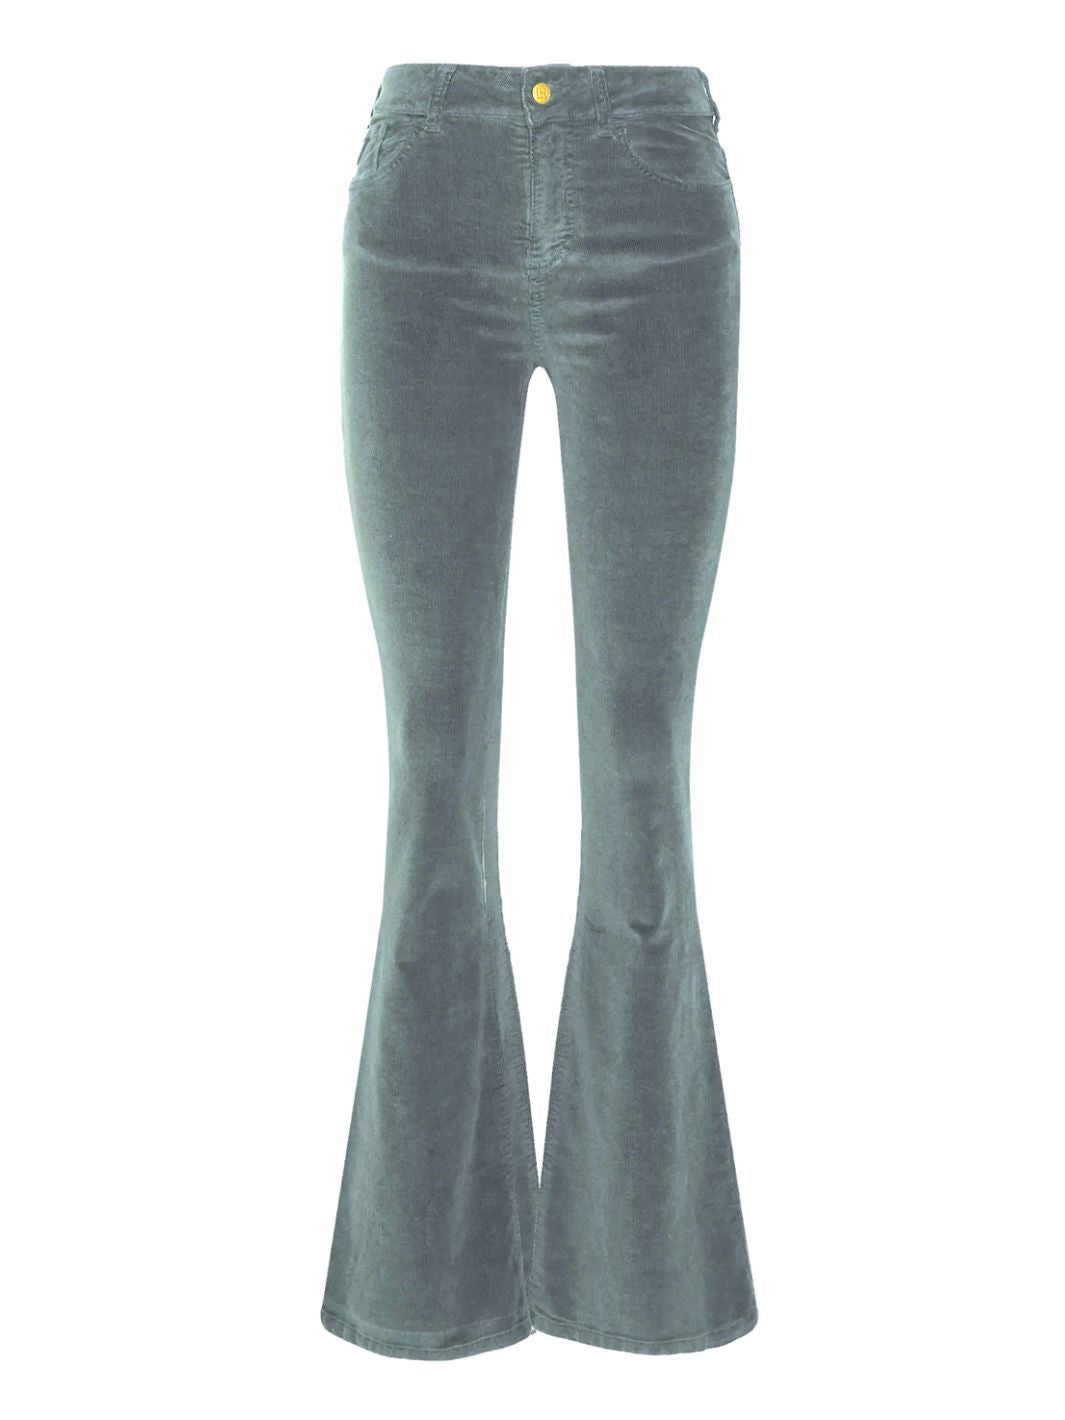 Lois Bukser Bukse | Raval Micro Vintage Aqua Gray